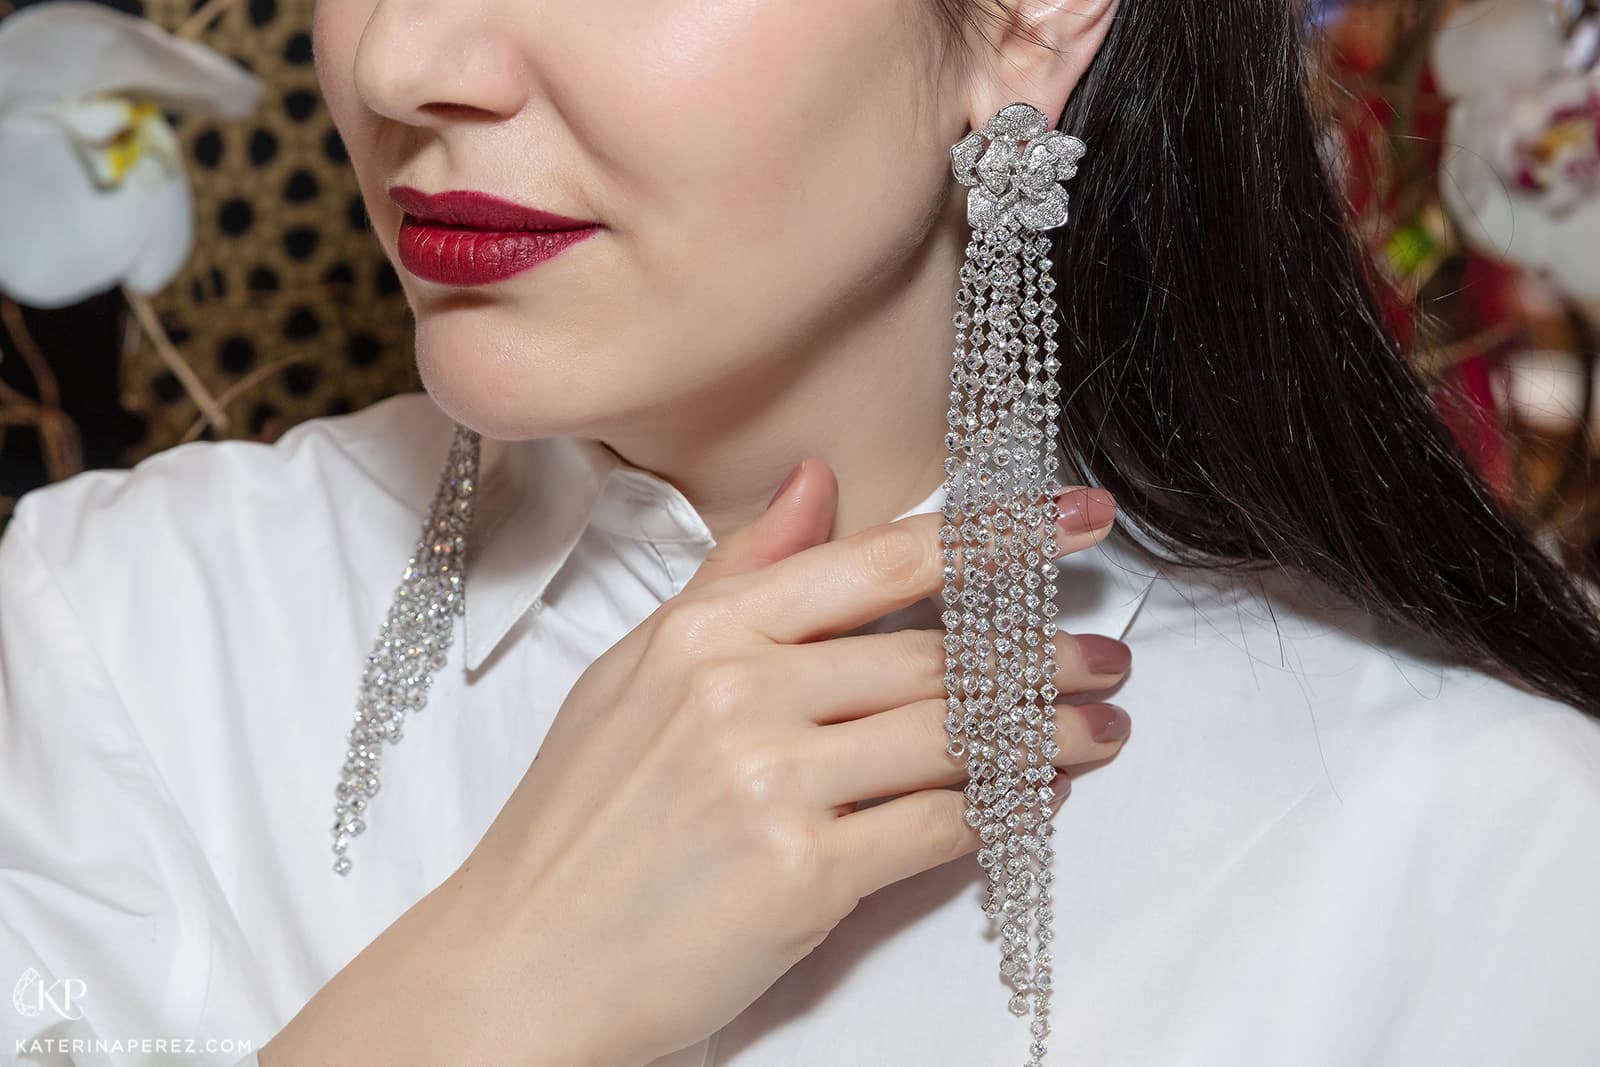 Бриллиантовые серьги Jaipur Gems из коллекции Dazzling Diamonds. Фото: Simon Martner